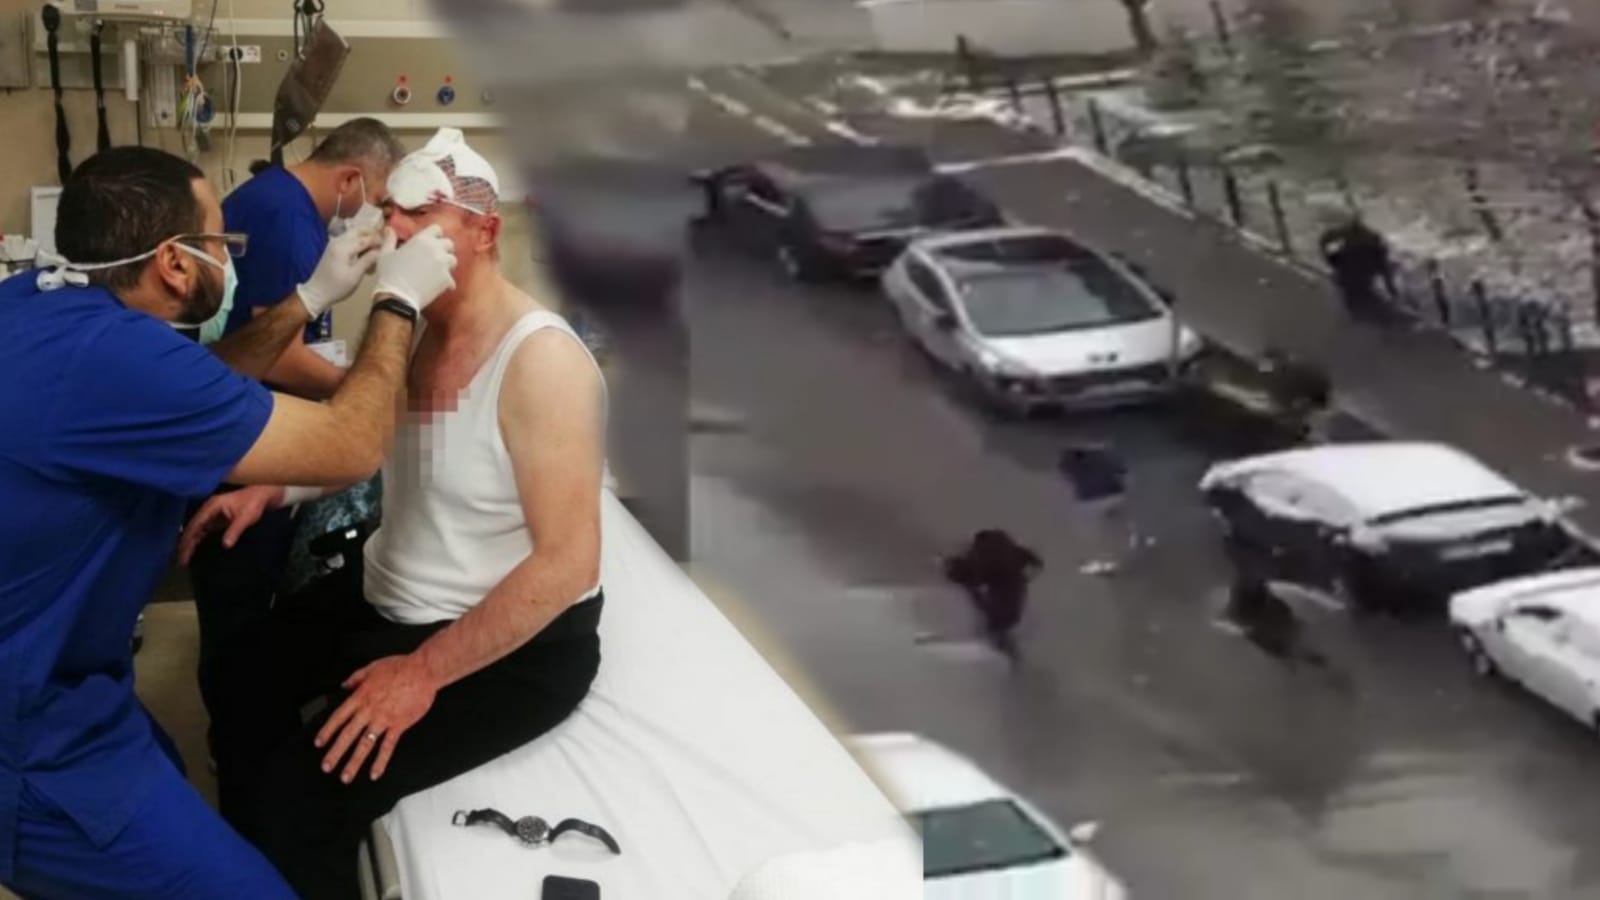 Selçuk Özdağ saldırısının görüntüleri yayınlandı: Plakasız araçla kaçtılar